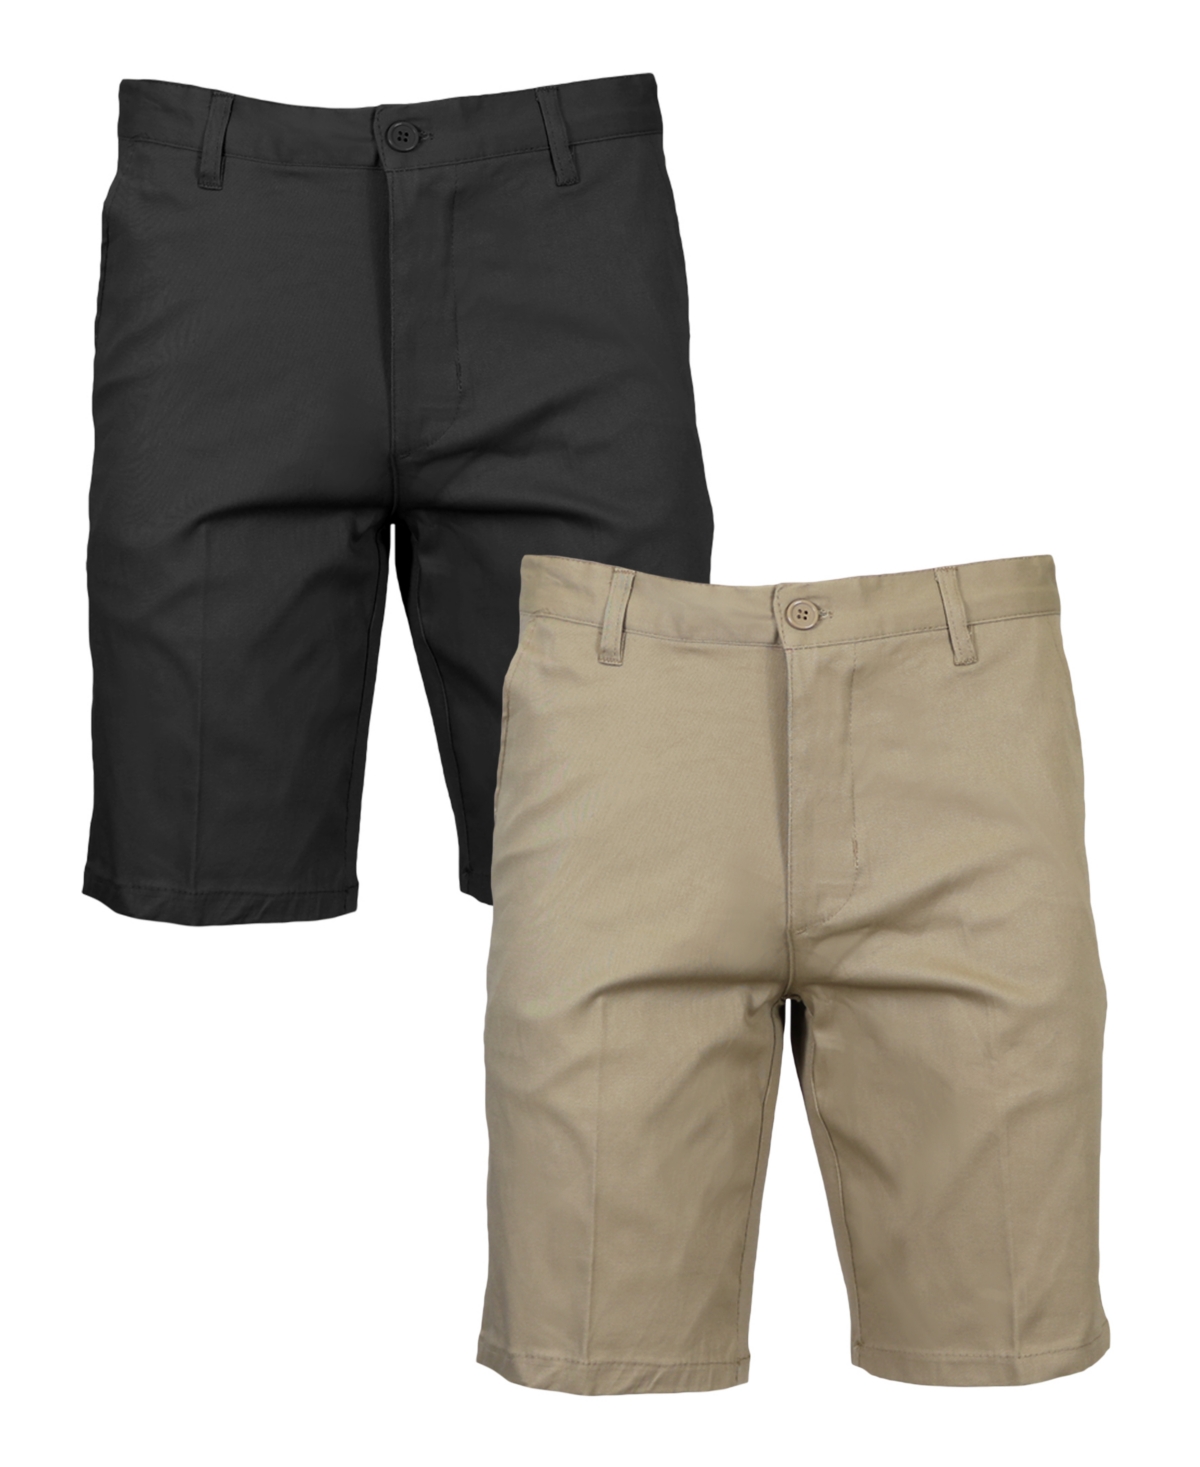 Men's Slim Fitting Cotton Flex Stretch Chino Shorts, Pack of 2 - Navy Navy